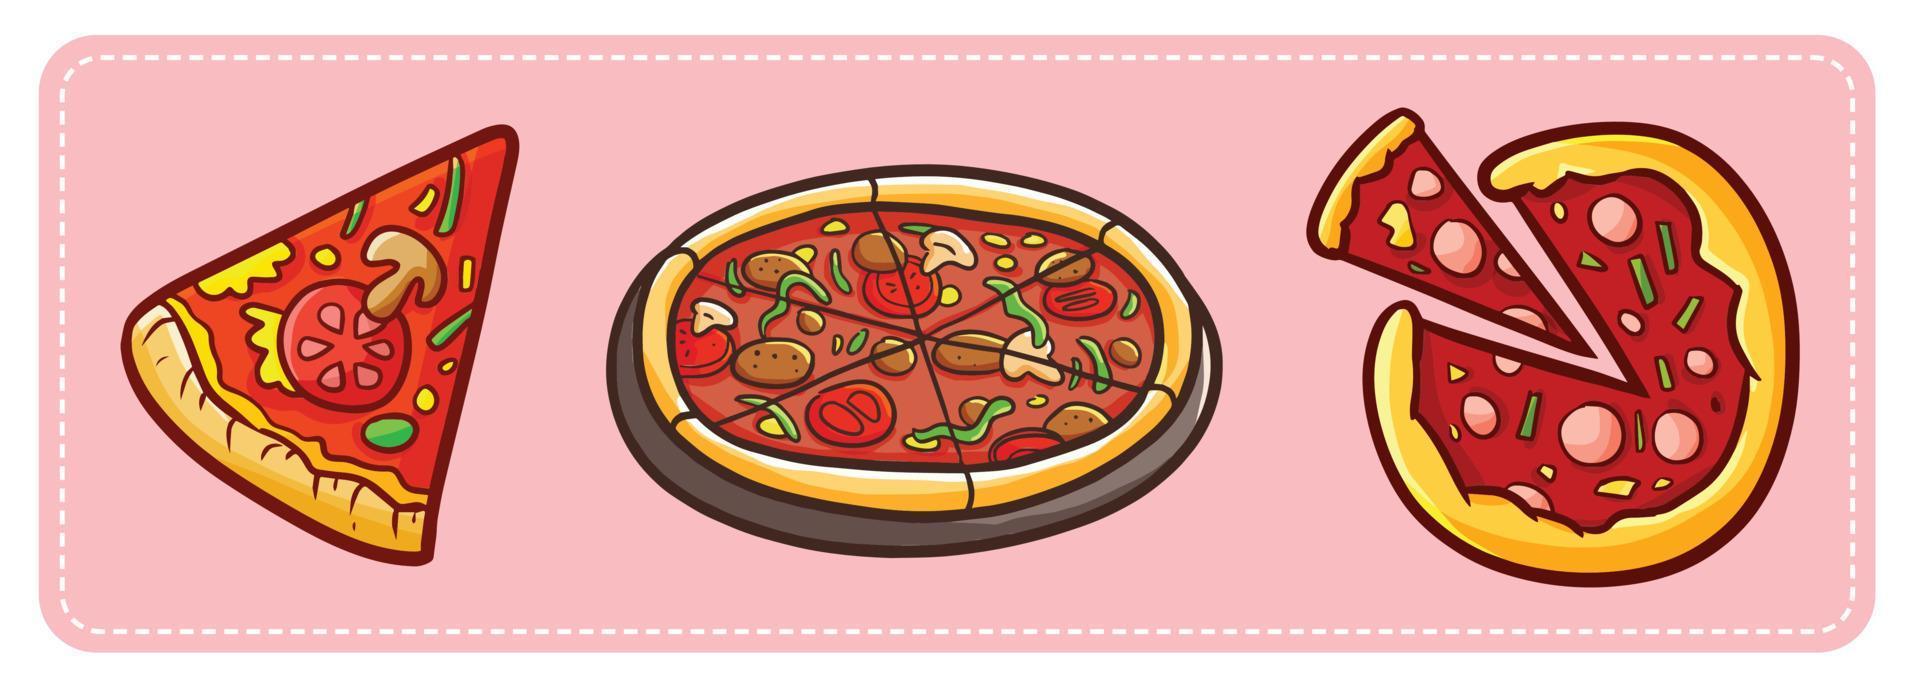 pizza en estilo de dibujos animados divertidos vector